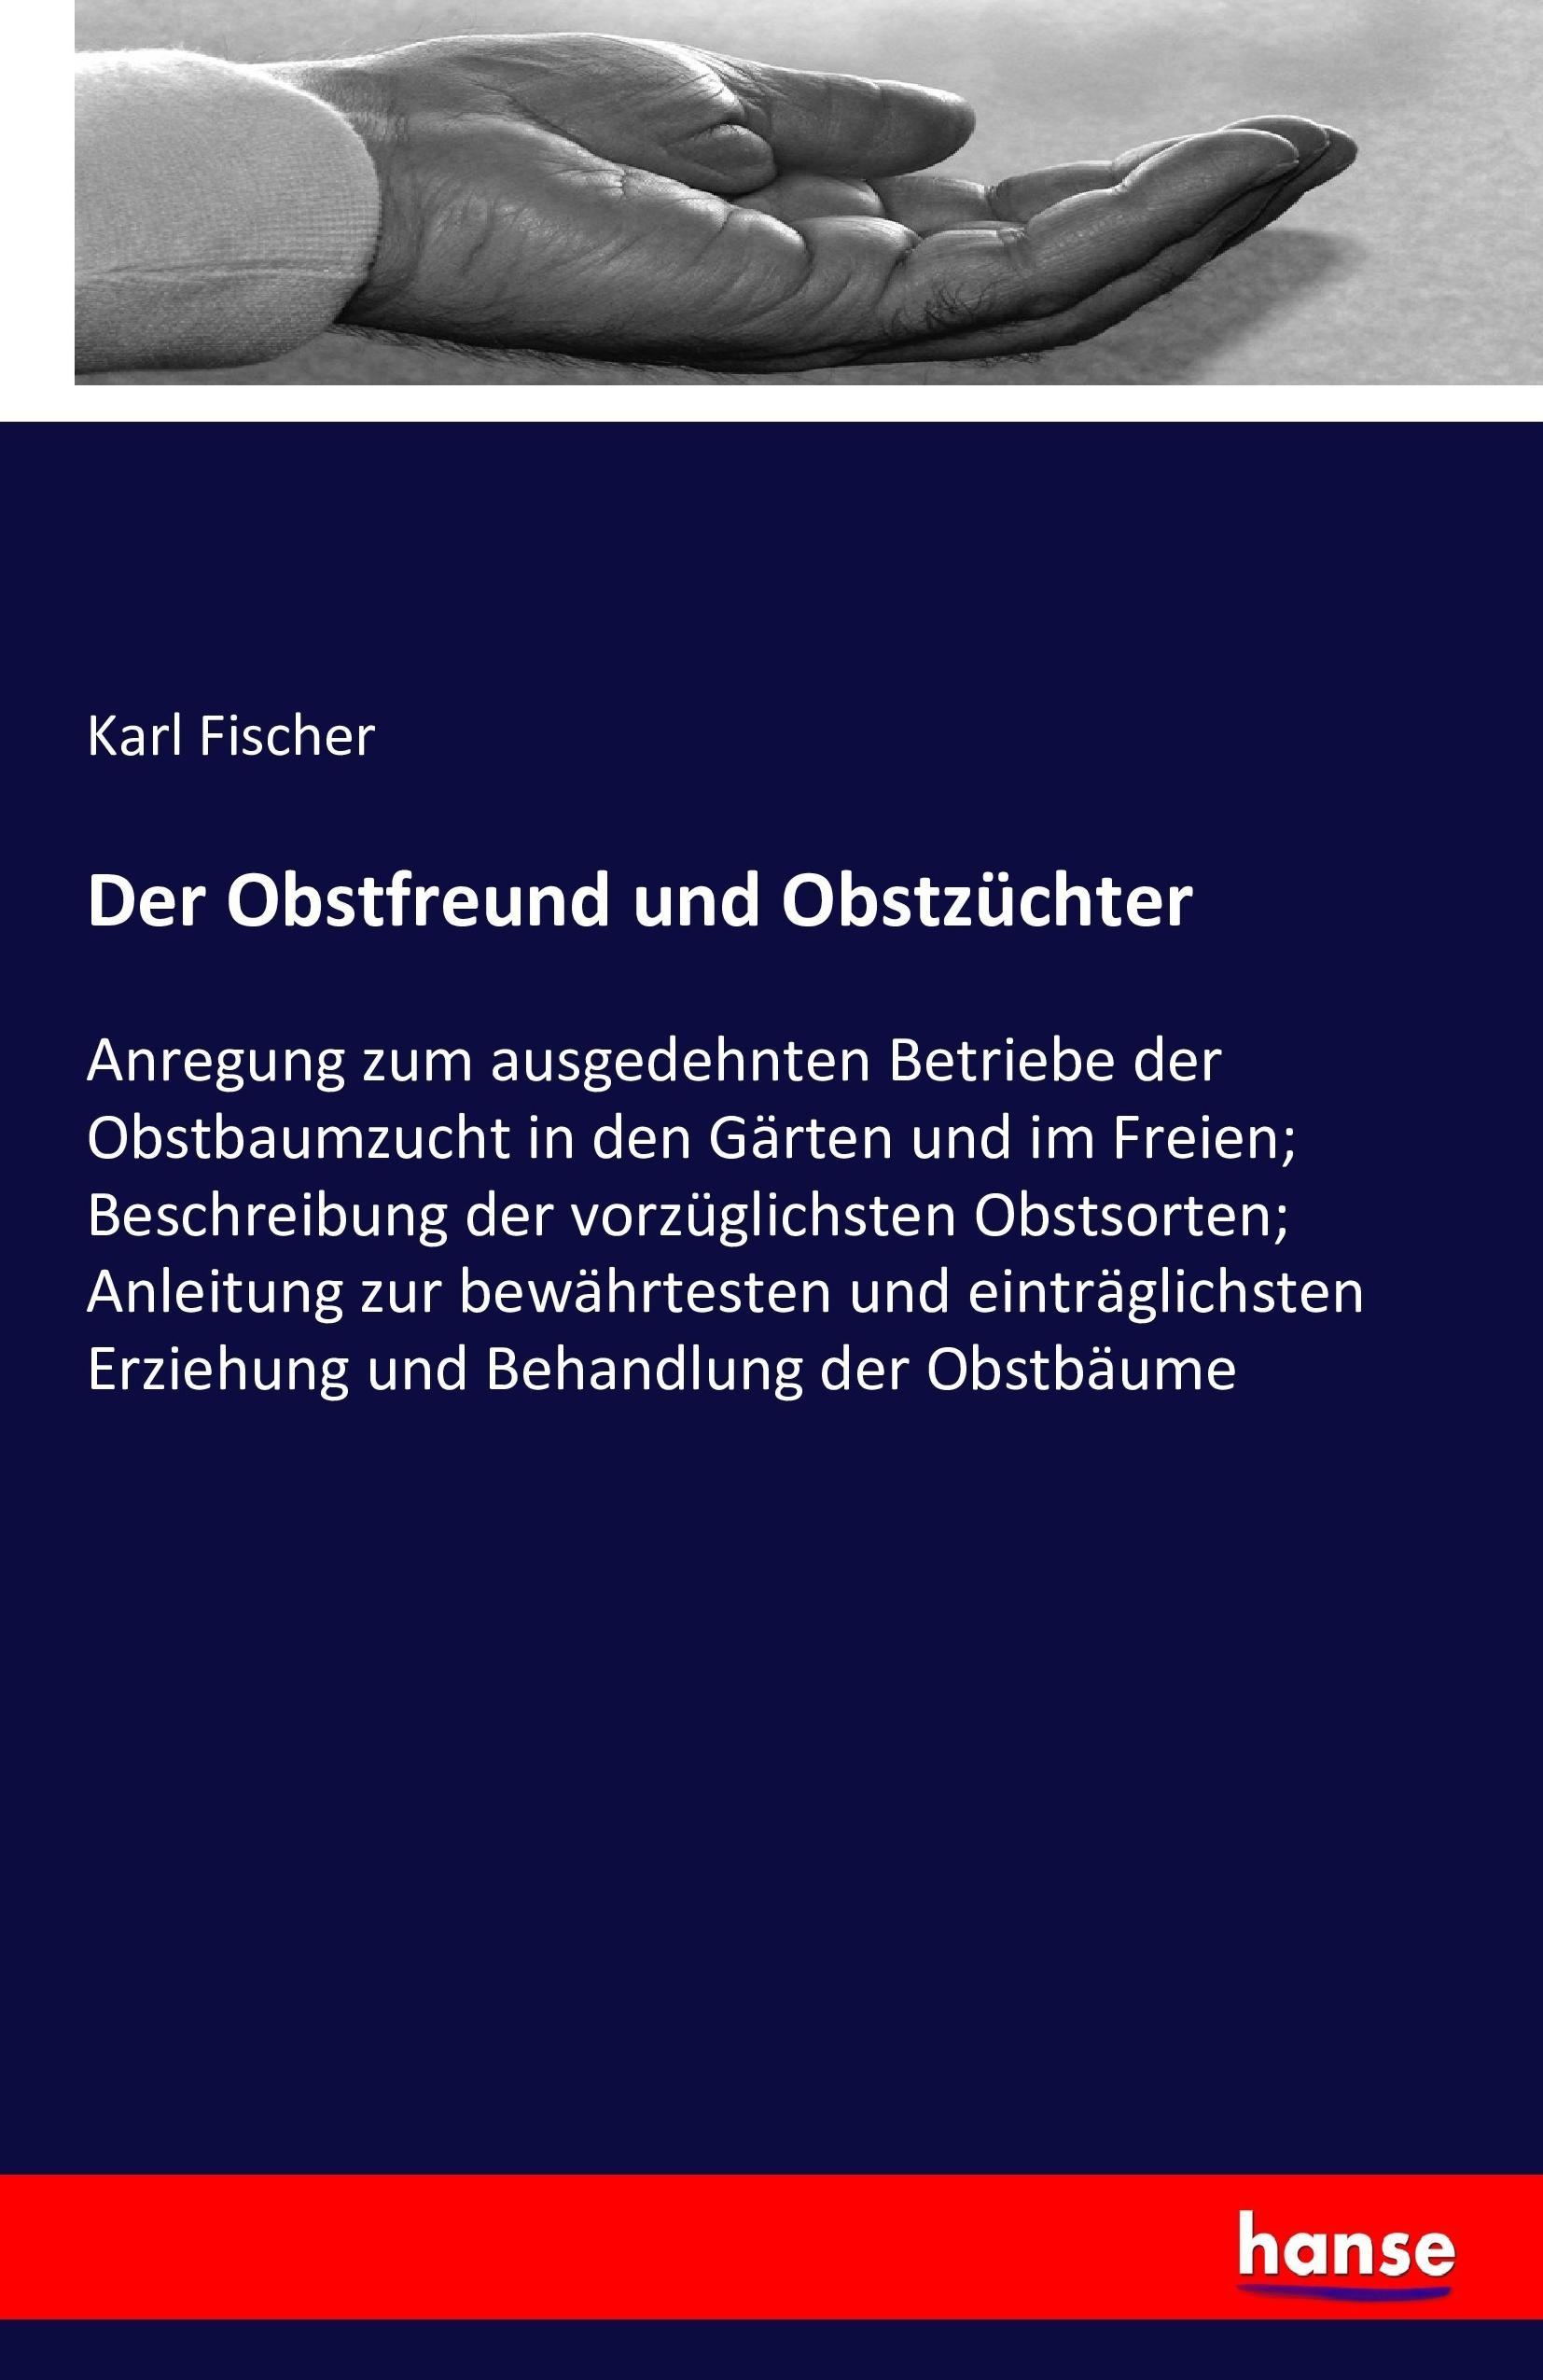 Der Obstfreund und Obstzüchter / Karl Fischer / Taschenbuch / Paperback / 272 S. / Deutsch / 2016 / hansebooks / EAN 9783743301672 - Fischer, Karl